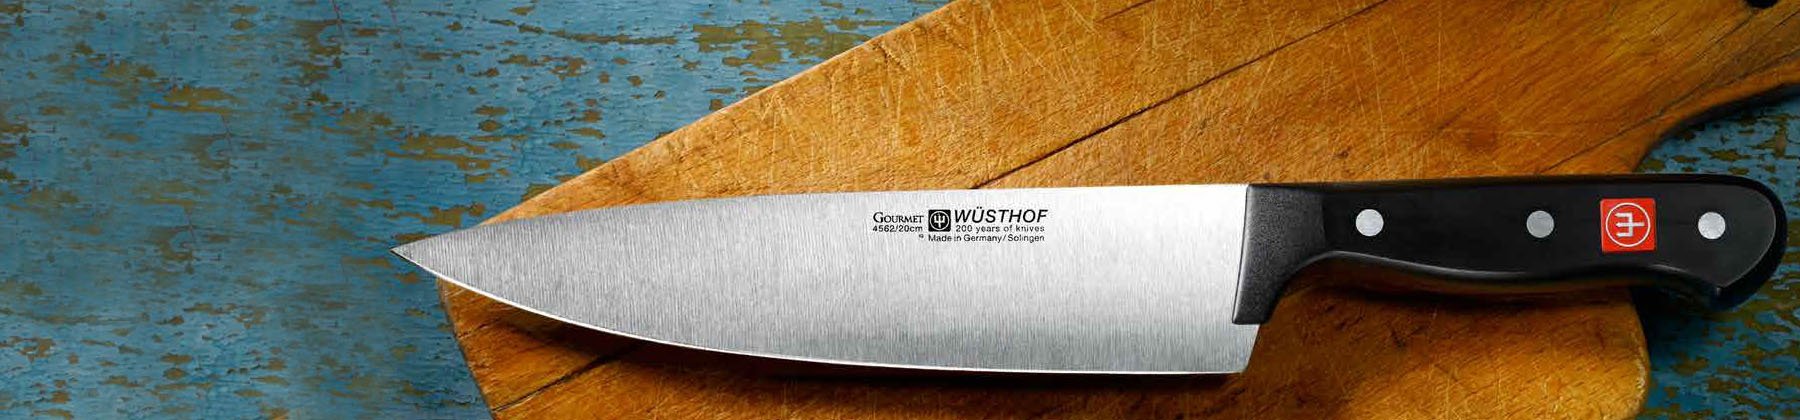 Photo of Wusthof Gourmet knifes.